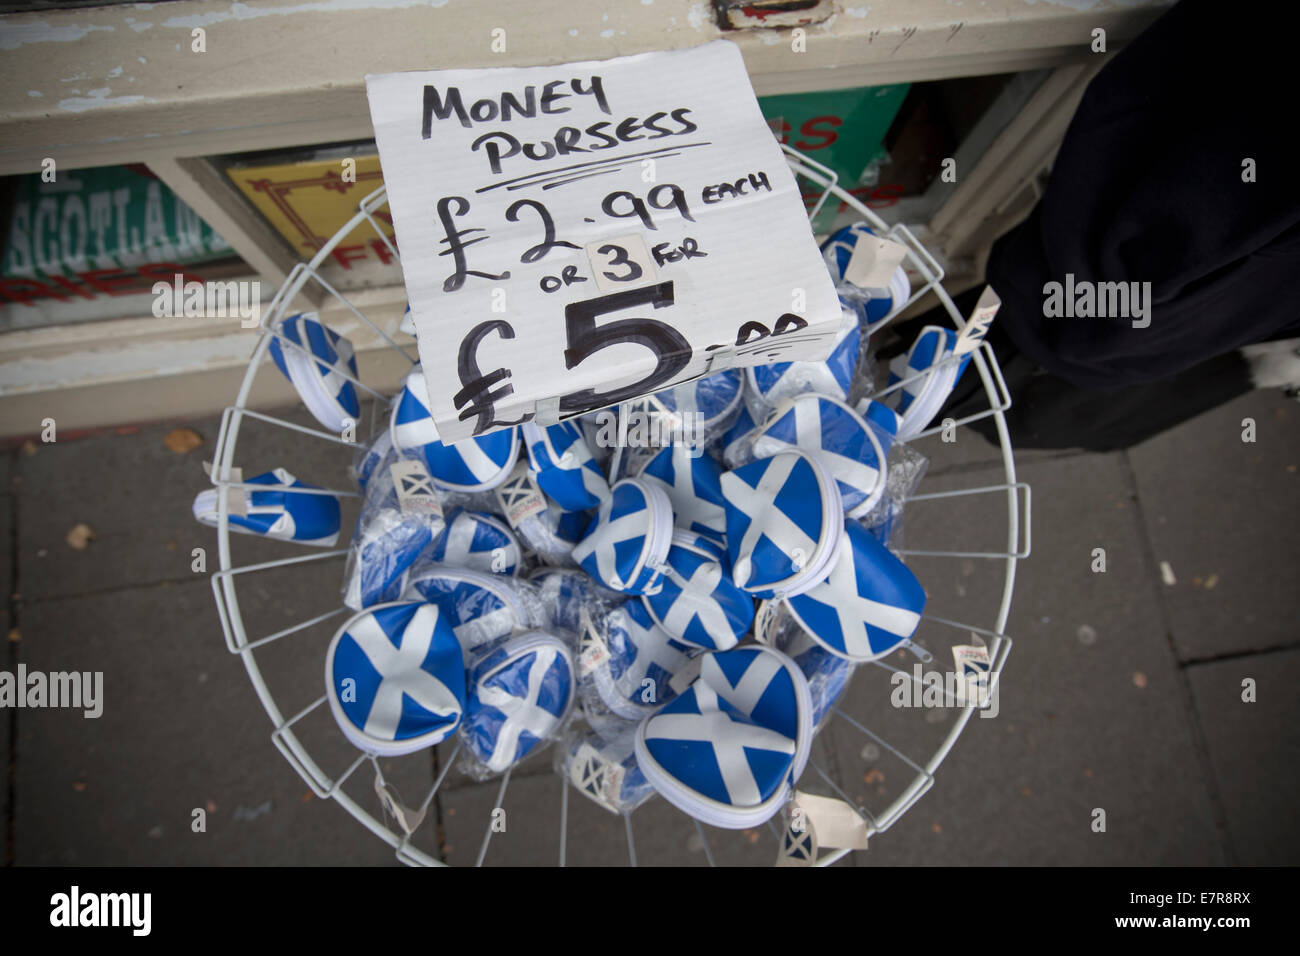 Geld-Taschen zum Verkauf an einen Souvenir-Shop in Forrest Road, Edinburgh. Die Geldbörsen trug das schottische Andreaskreuz Flaggendesign auf sie. Stockfoto